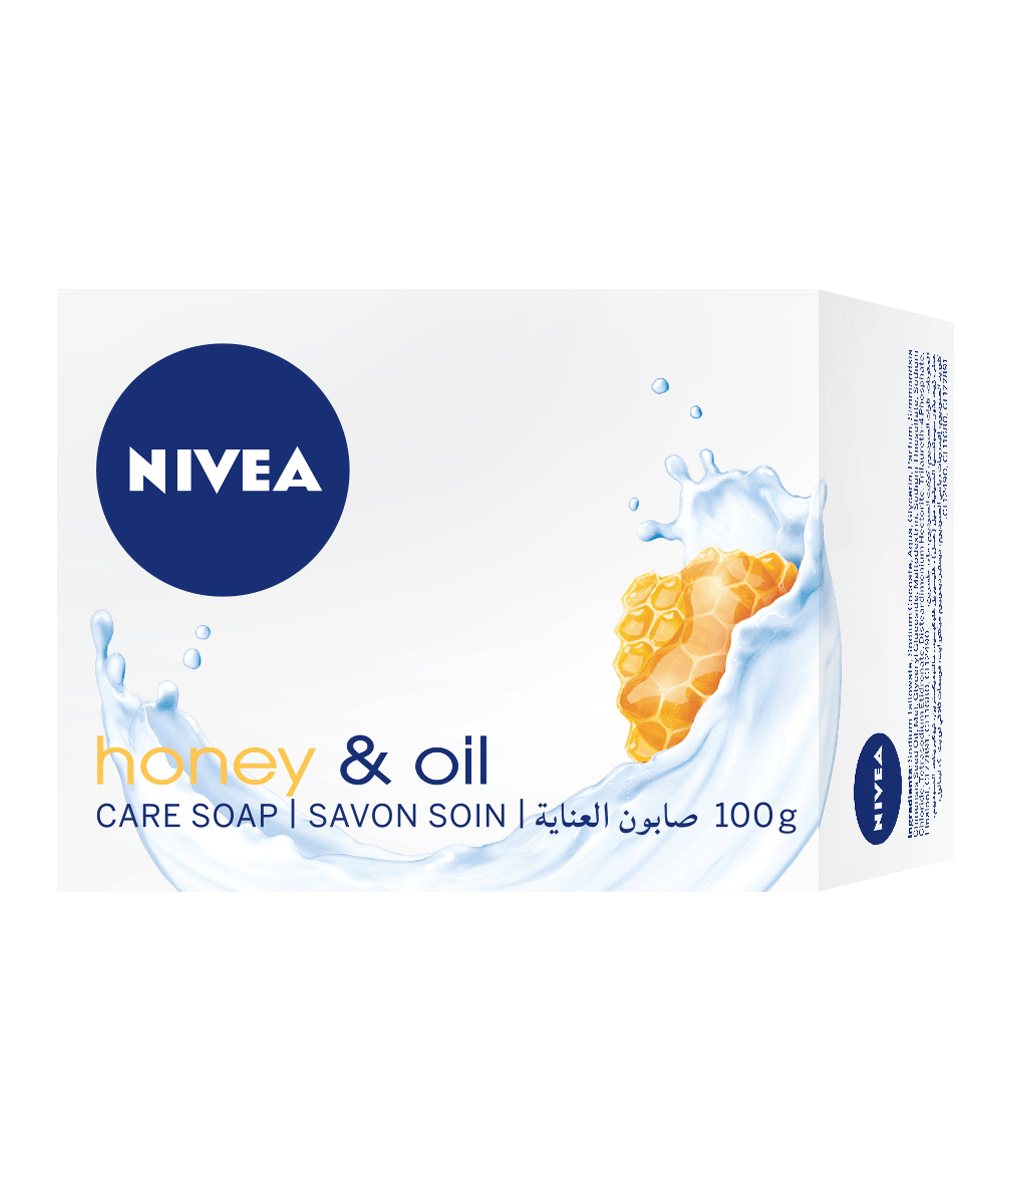 80665 NIVEA Honey & Oil Bar Soap 100g clean packshot bi-lingual